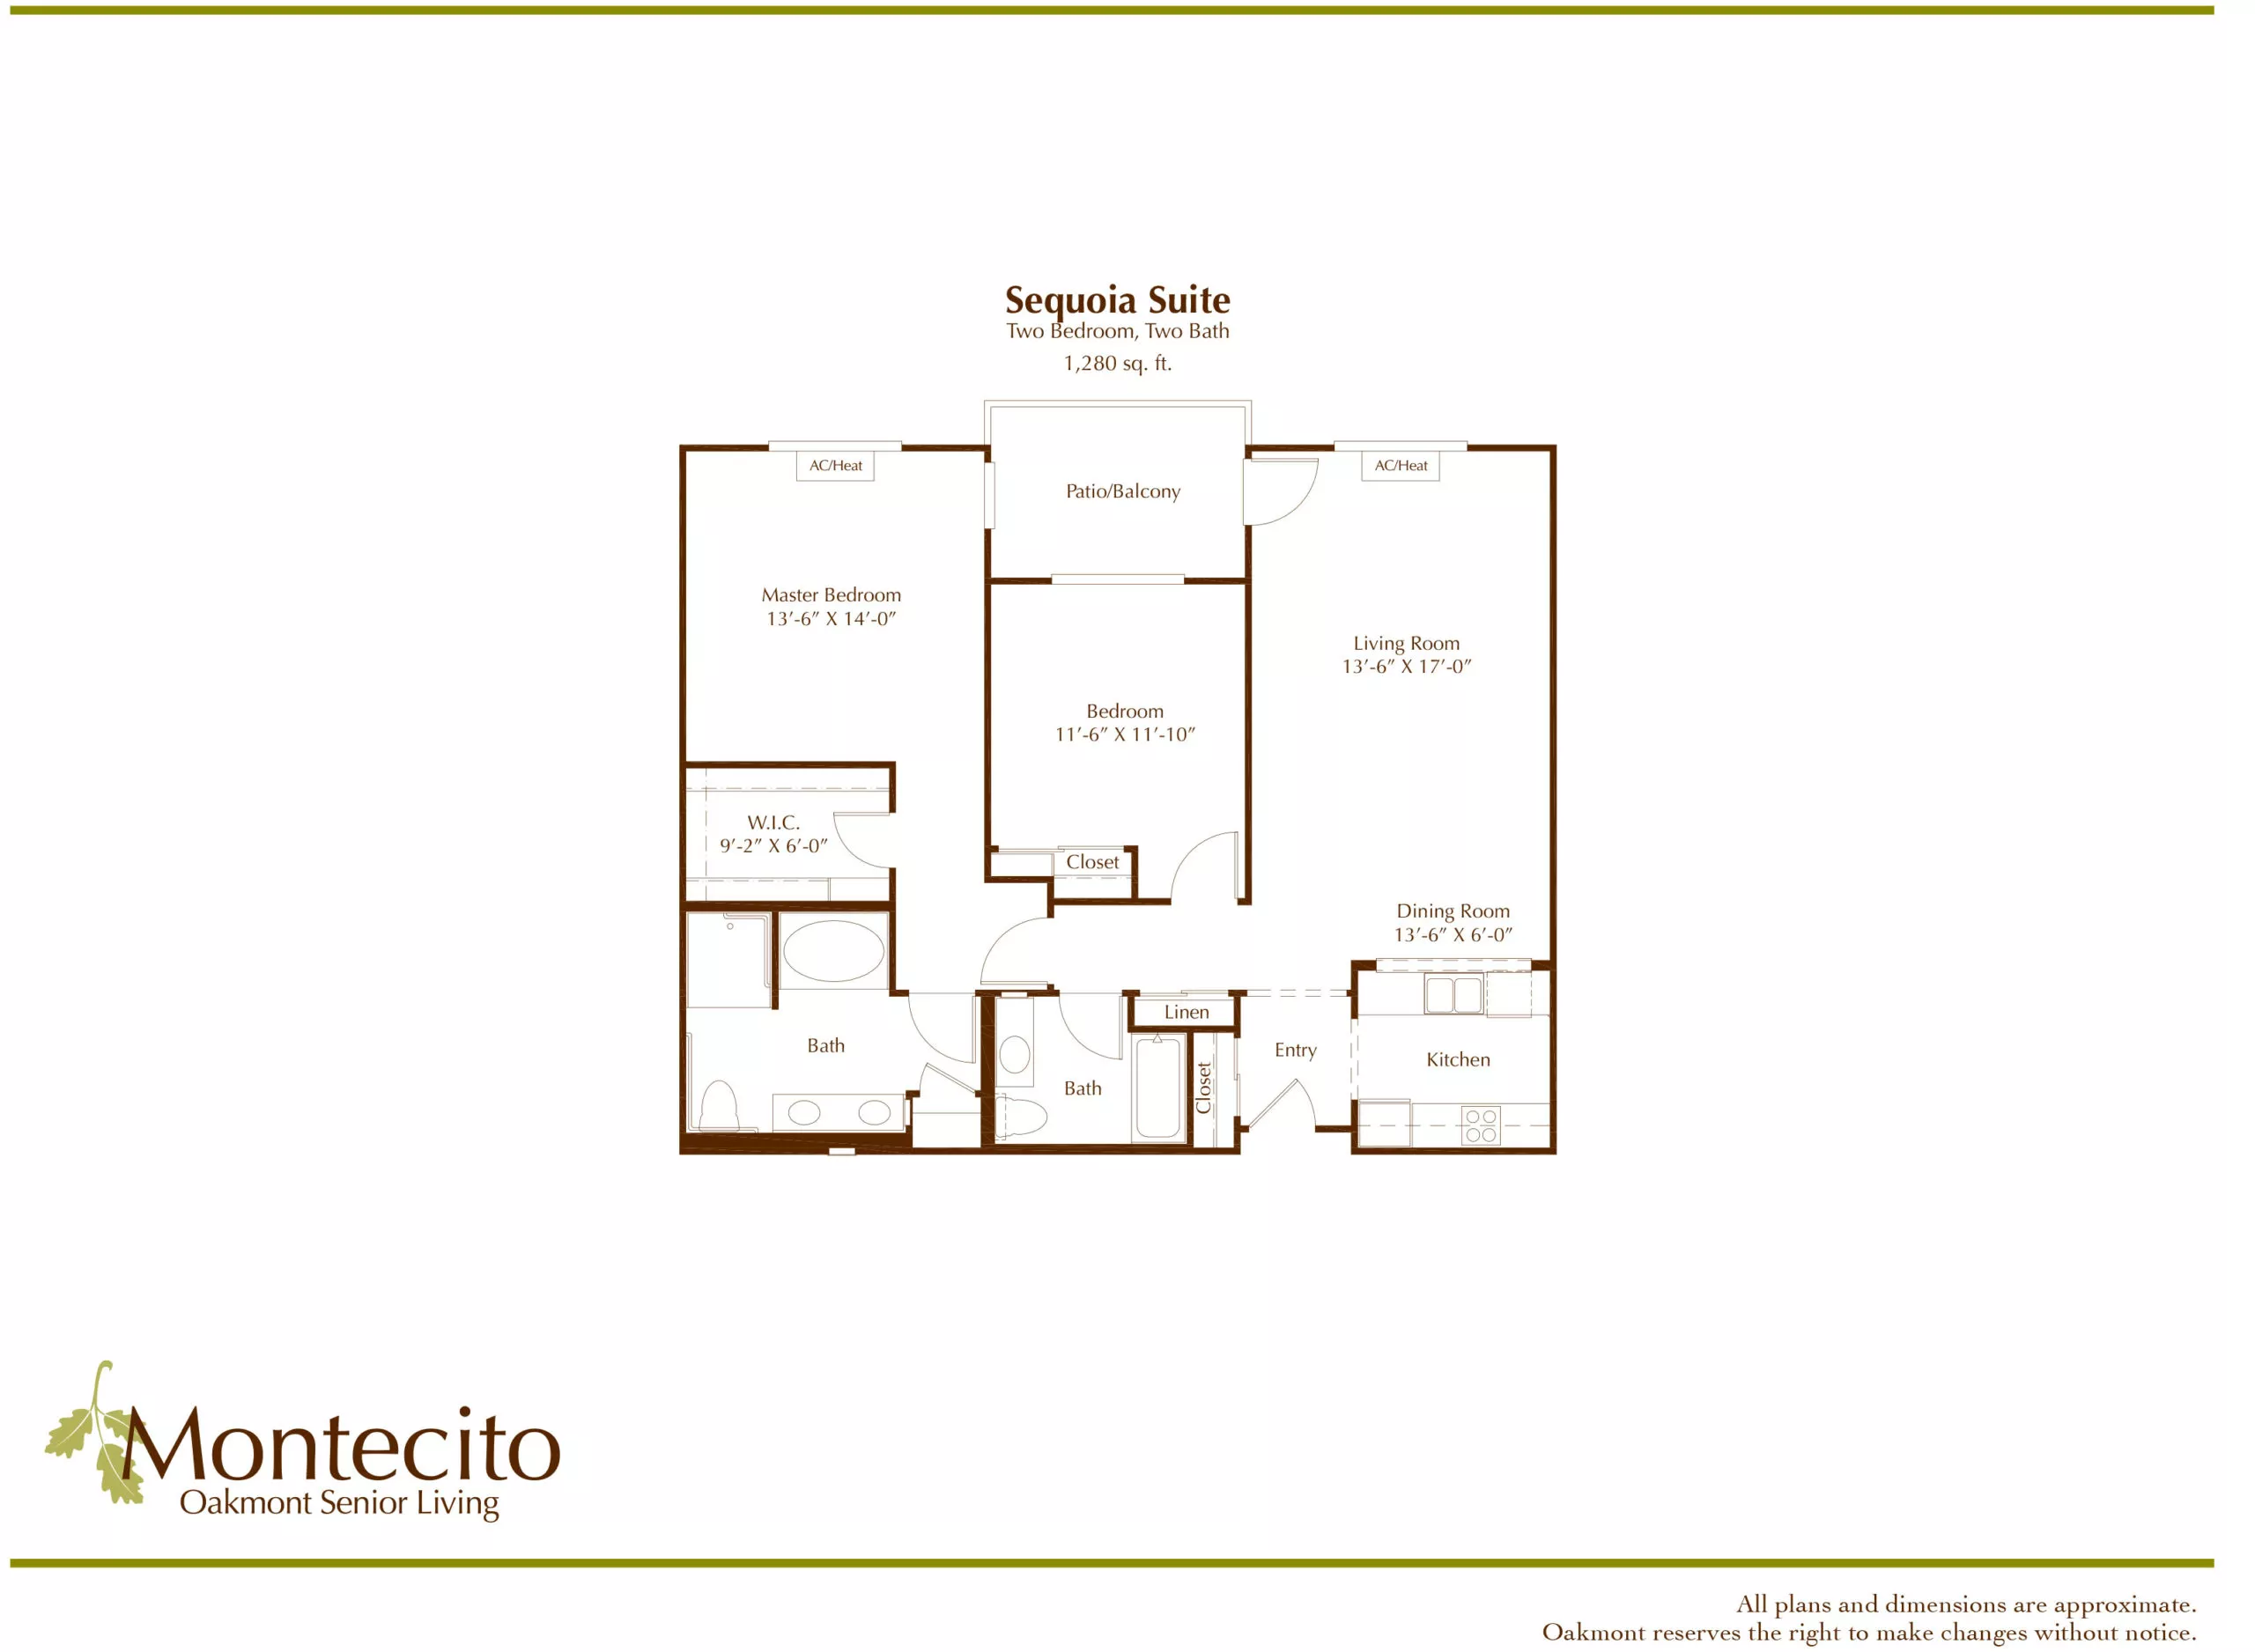 Sequoia Suite Floor plan